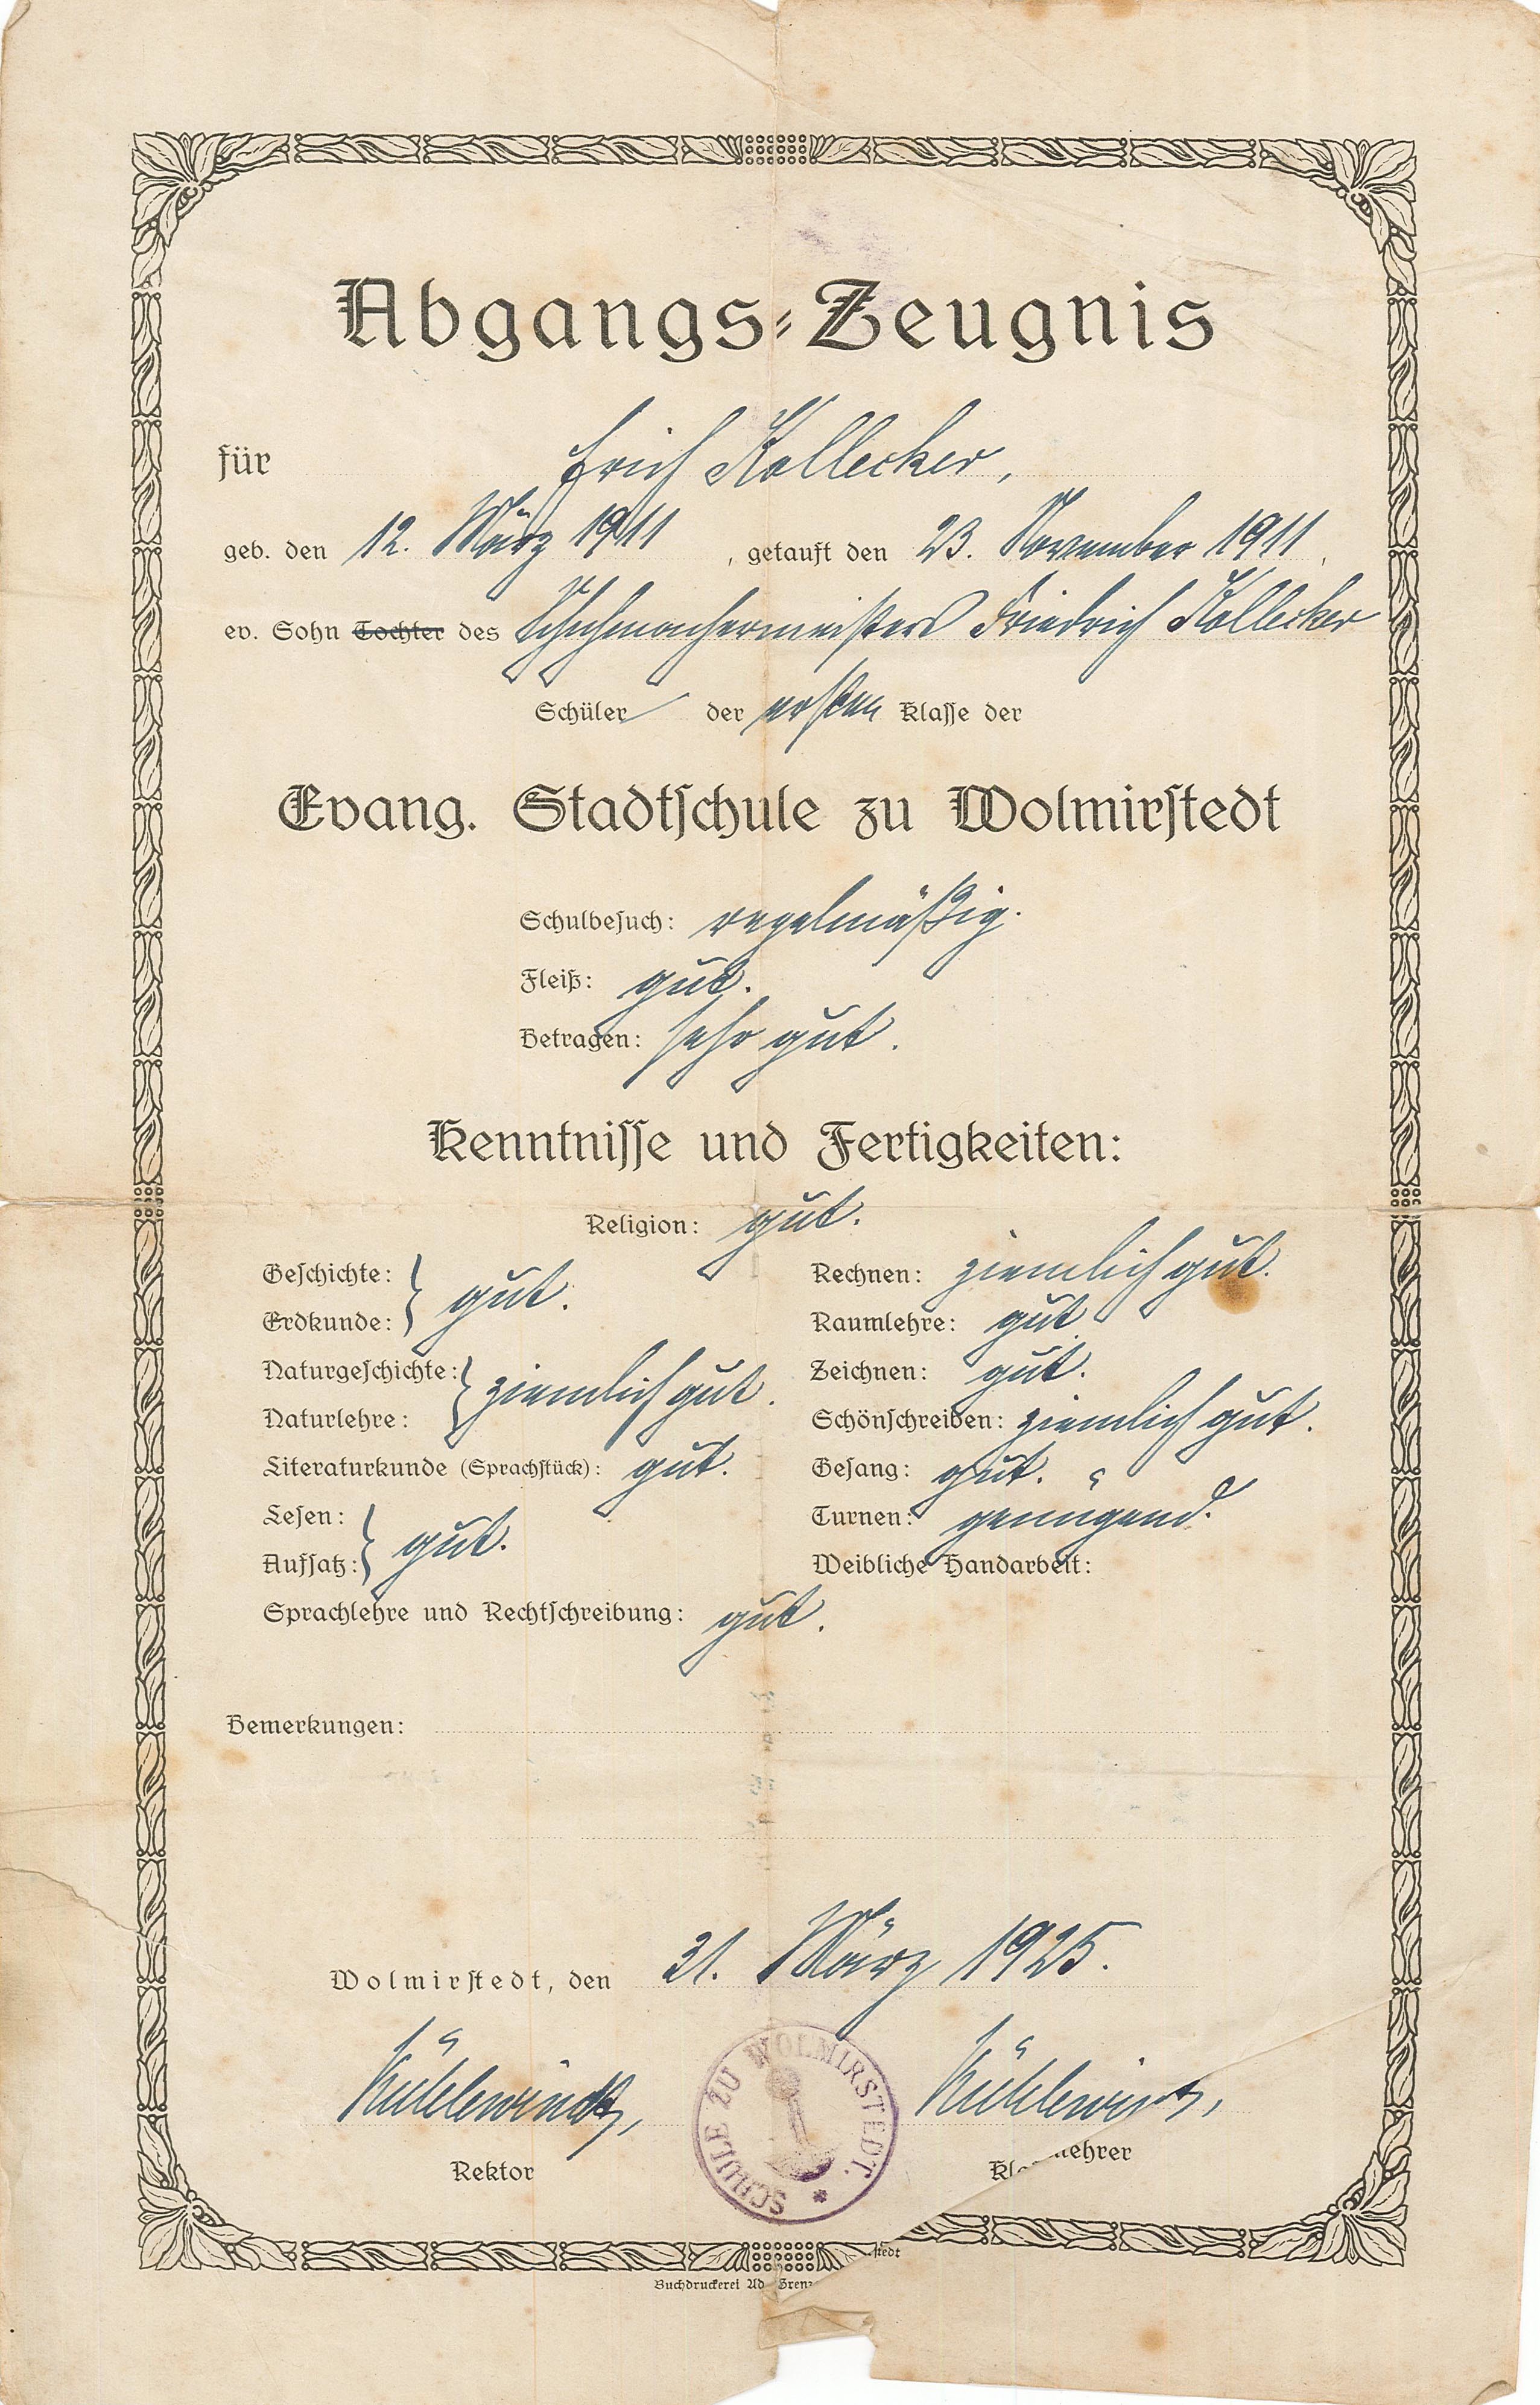 Abgangszeugnis 1. Klasse für Erich Kollecker, 31. März 1925 (Museum Wolmirstedt RR-F)